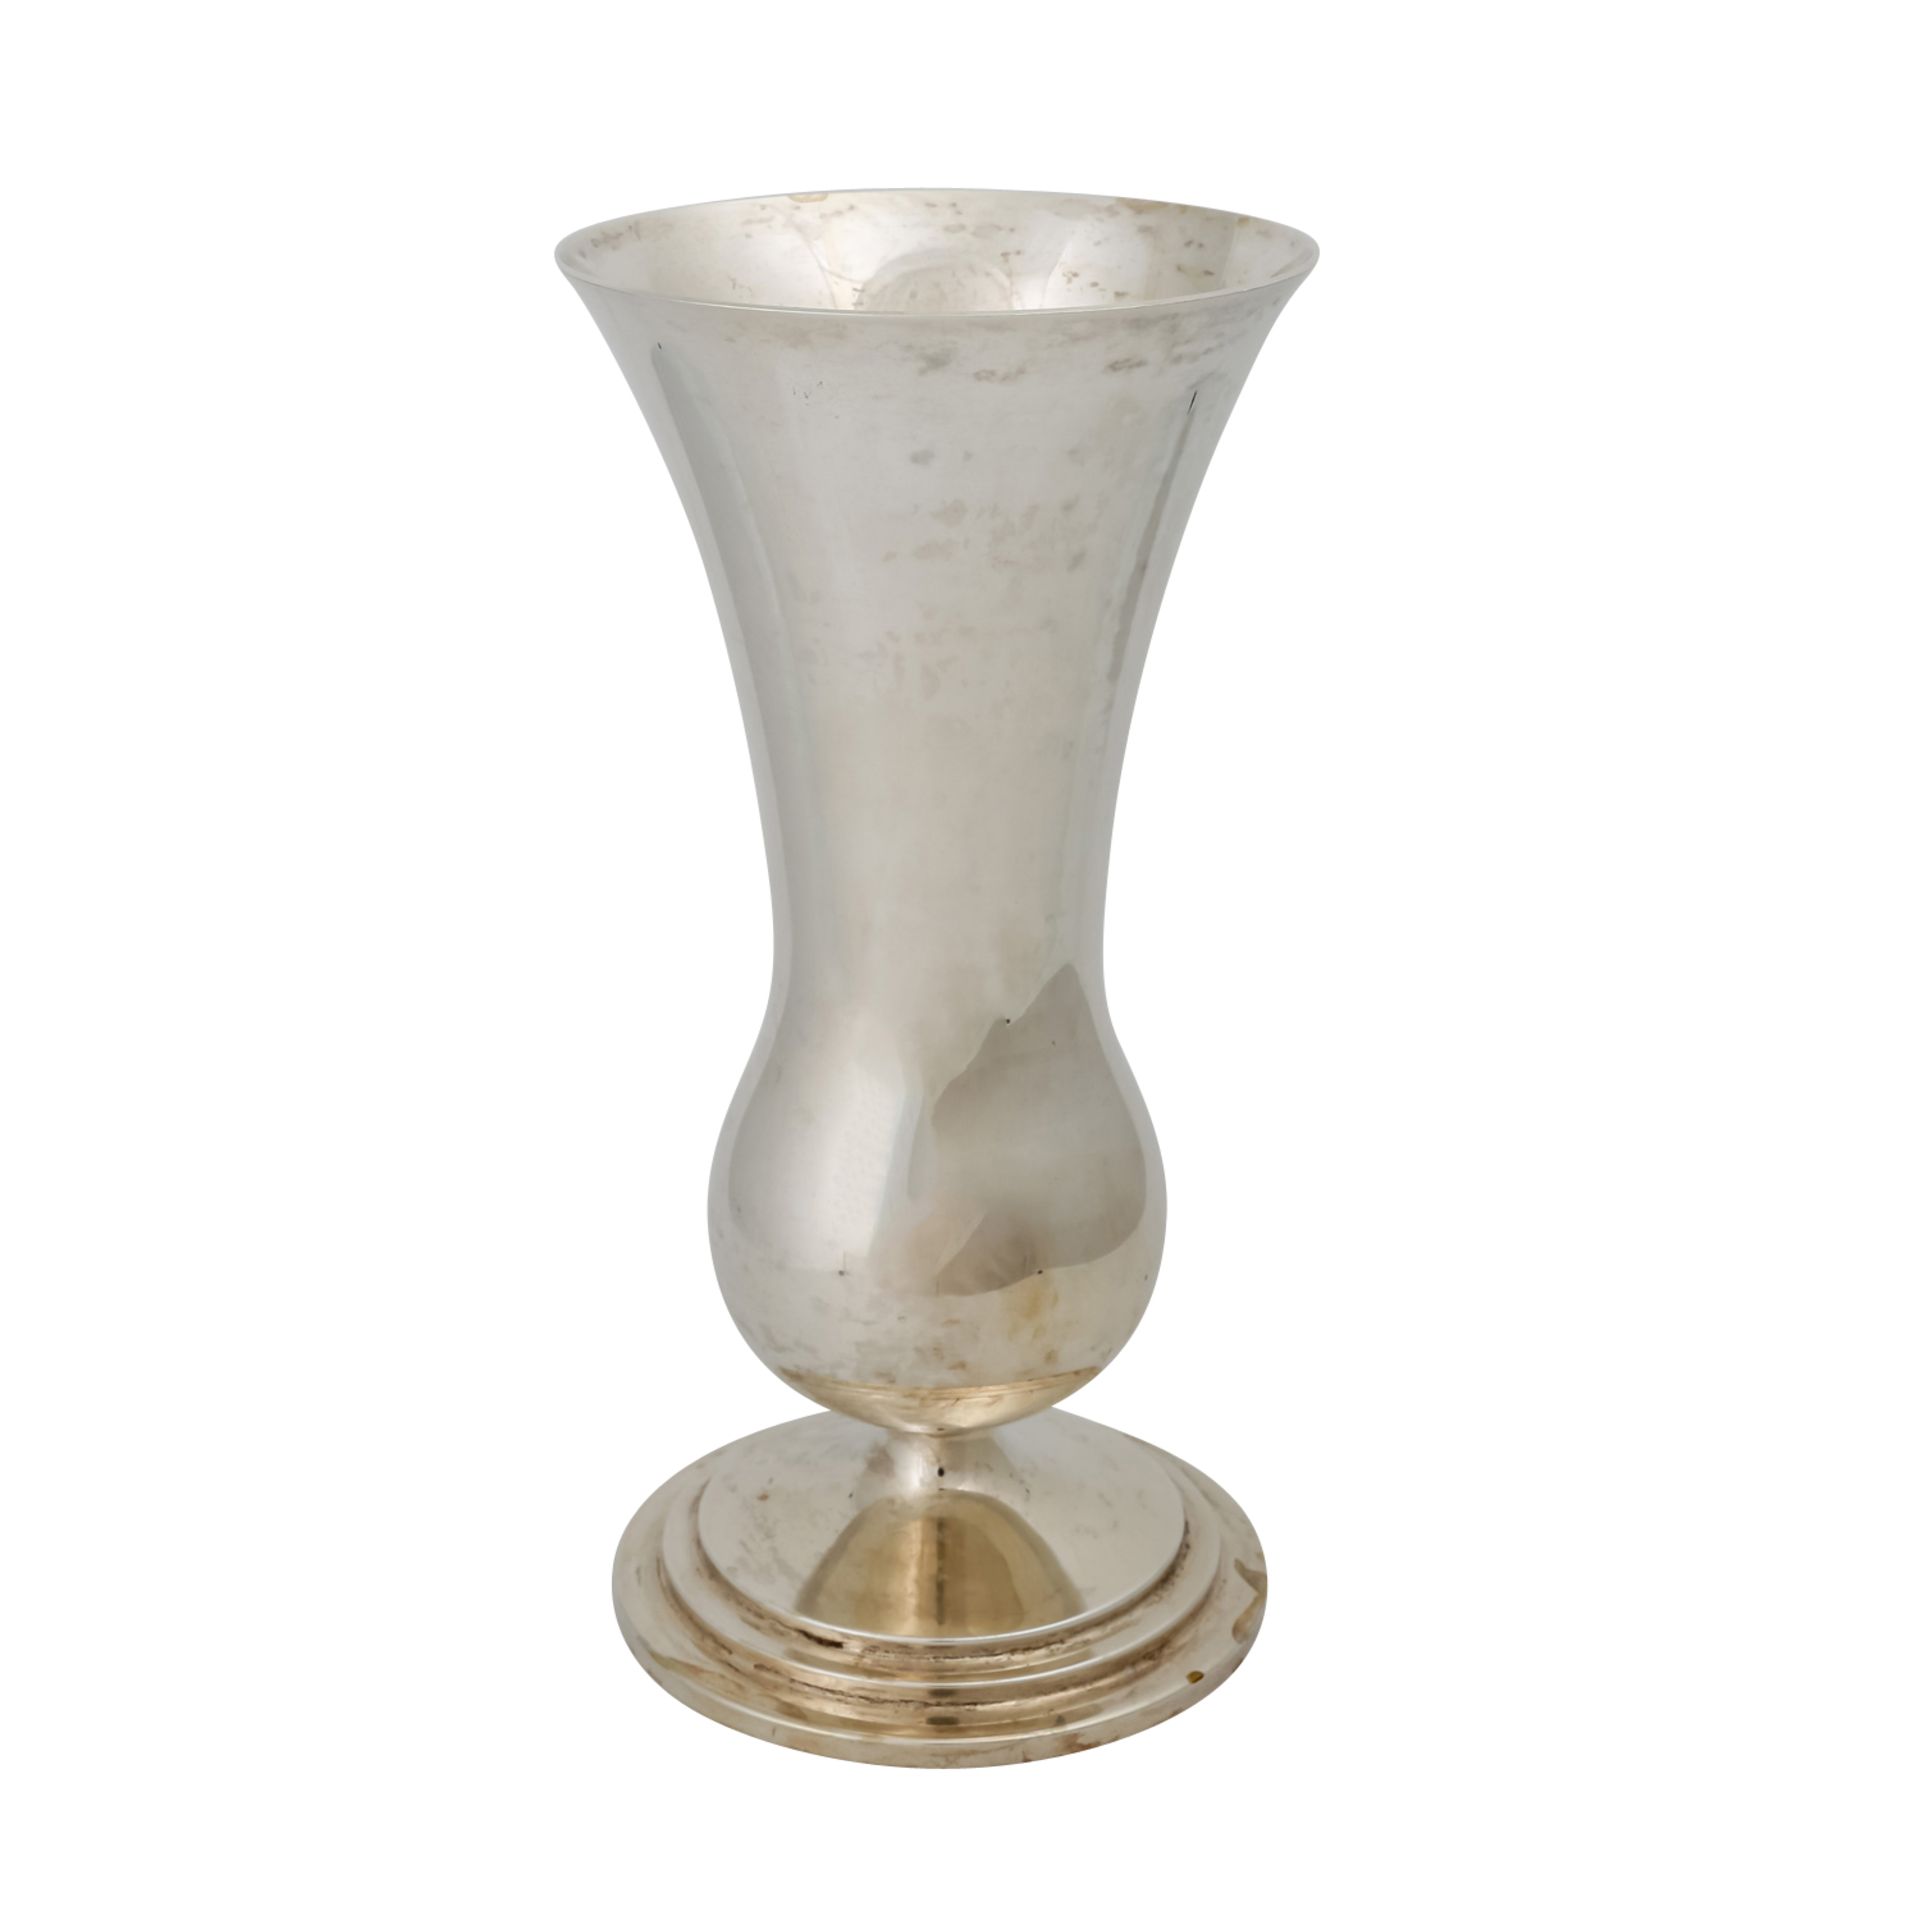 WILKENS & SÖHNE Vase, 20. Jh.runder Stand, getreppt, balusterartige Form, Marken: MZ, Halbmond, - Bild 2 aus 5